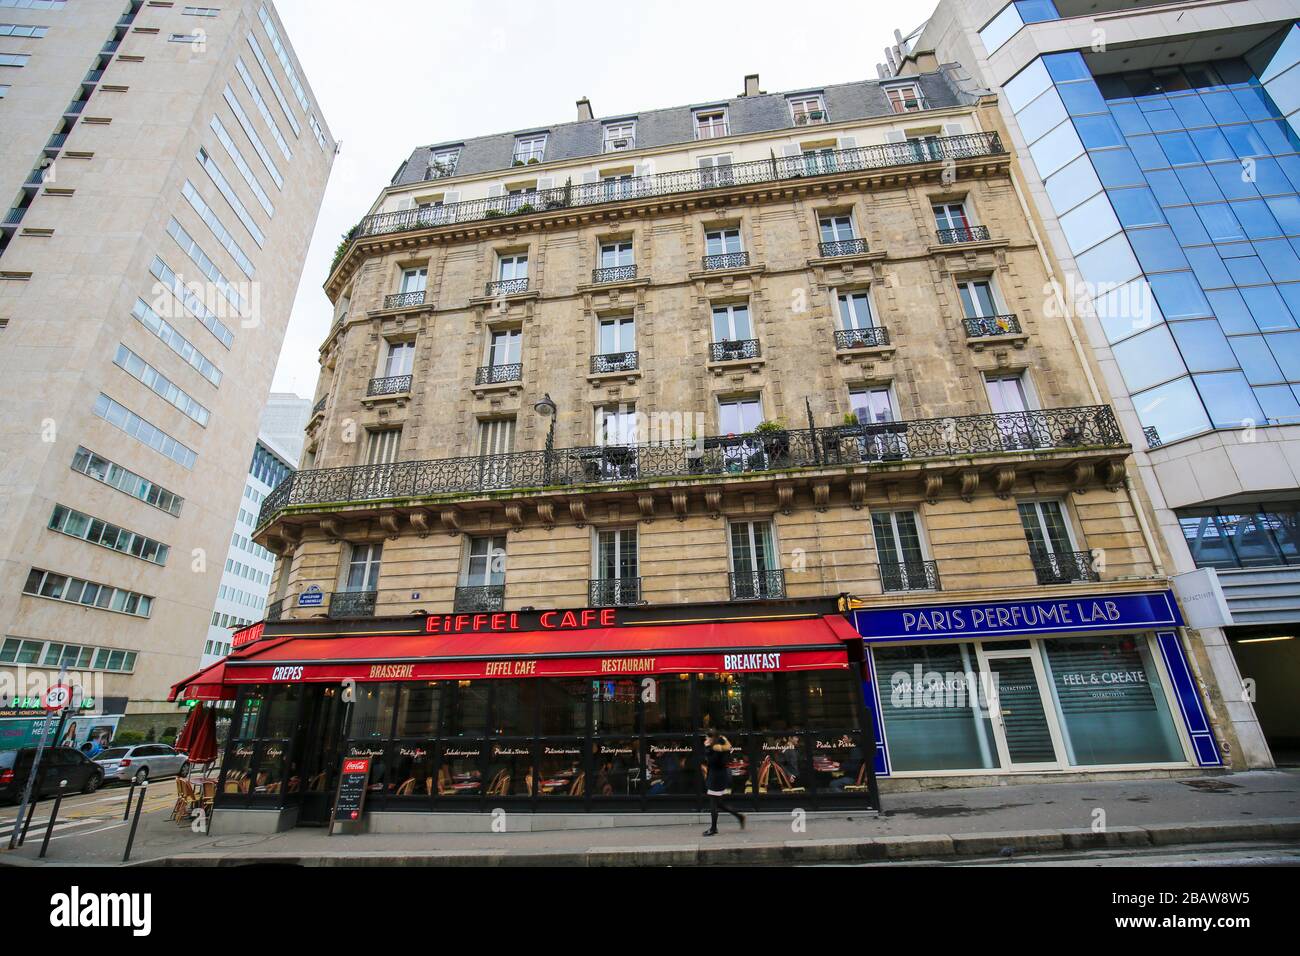 París, Francia - 11 de febrero de 2019: Eiffel Cafe en una calle típica de París, Francia Foto de stock